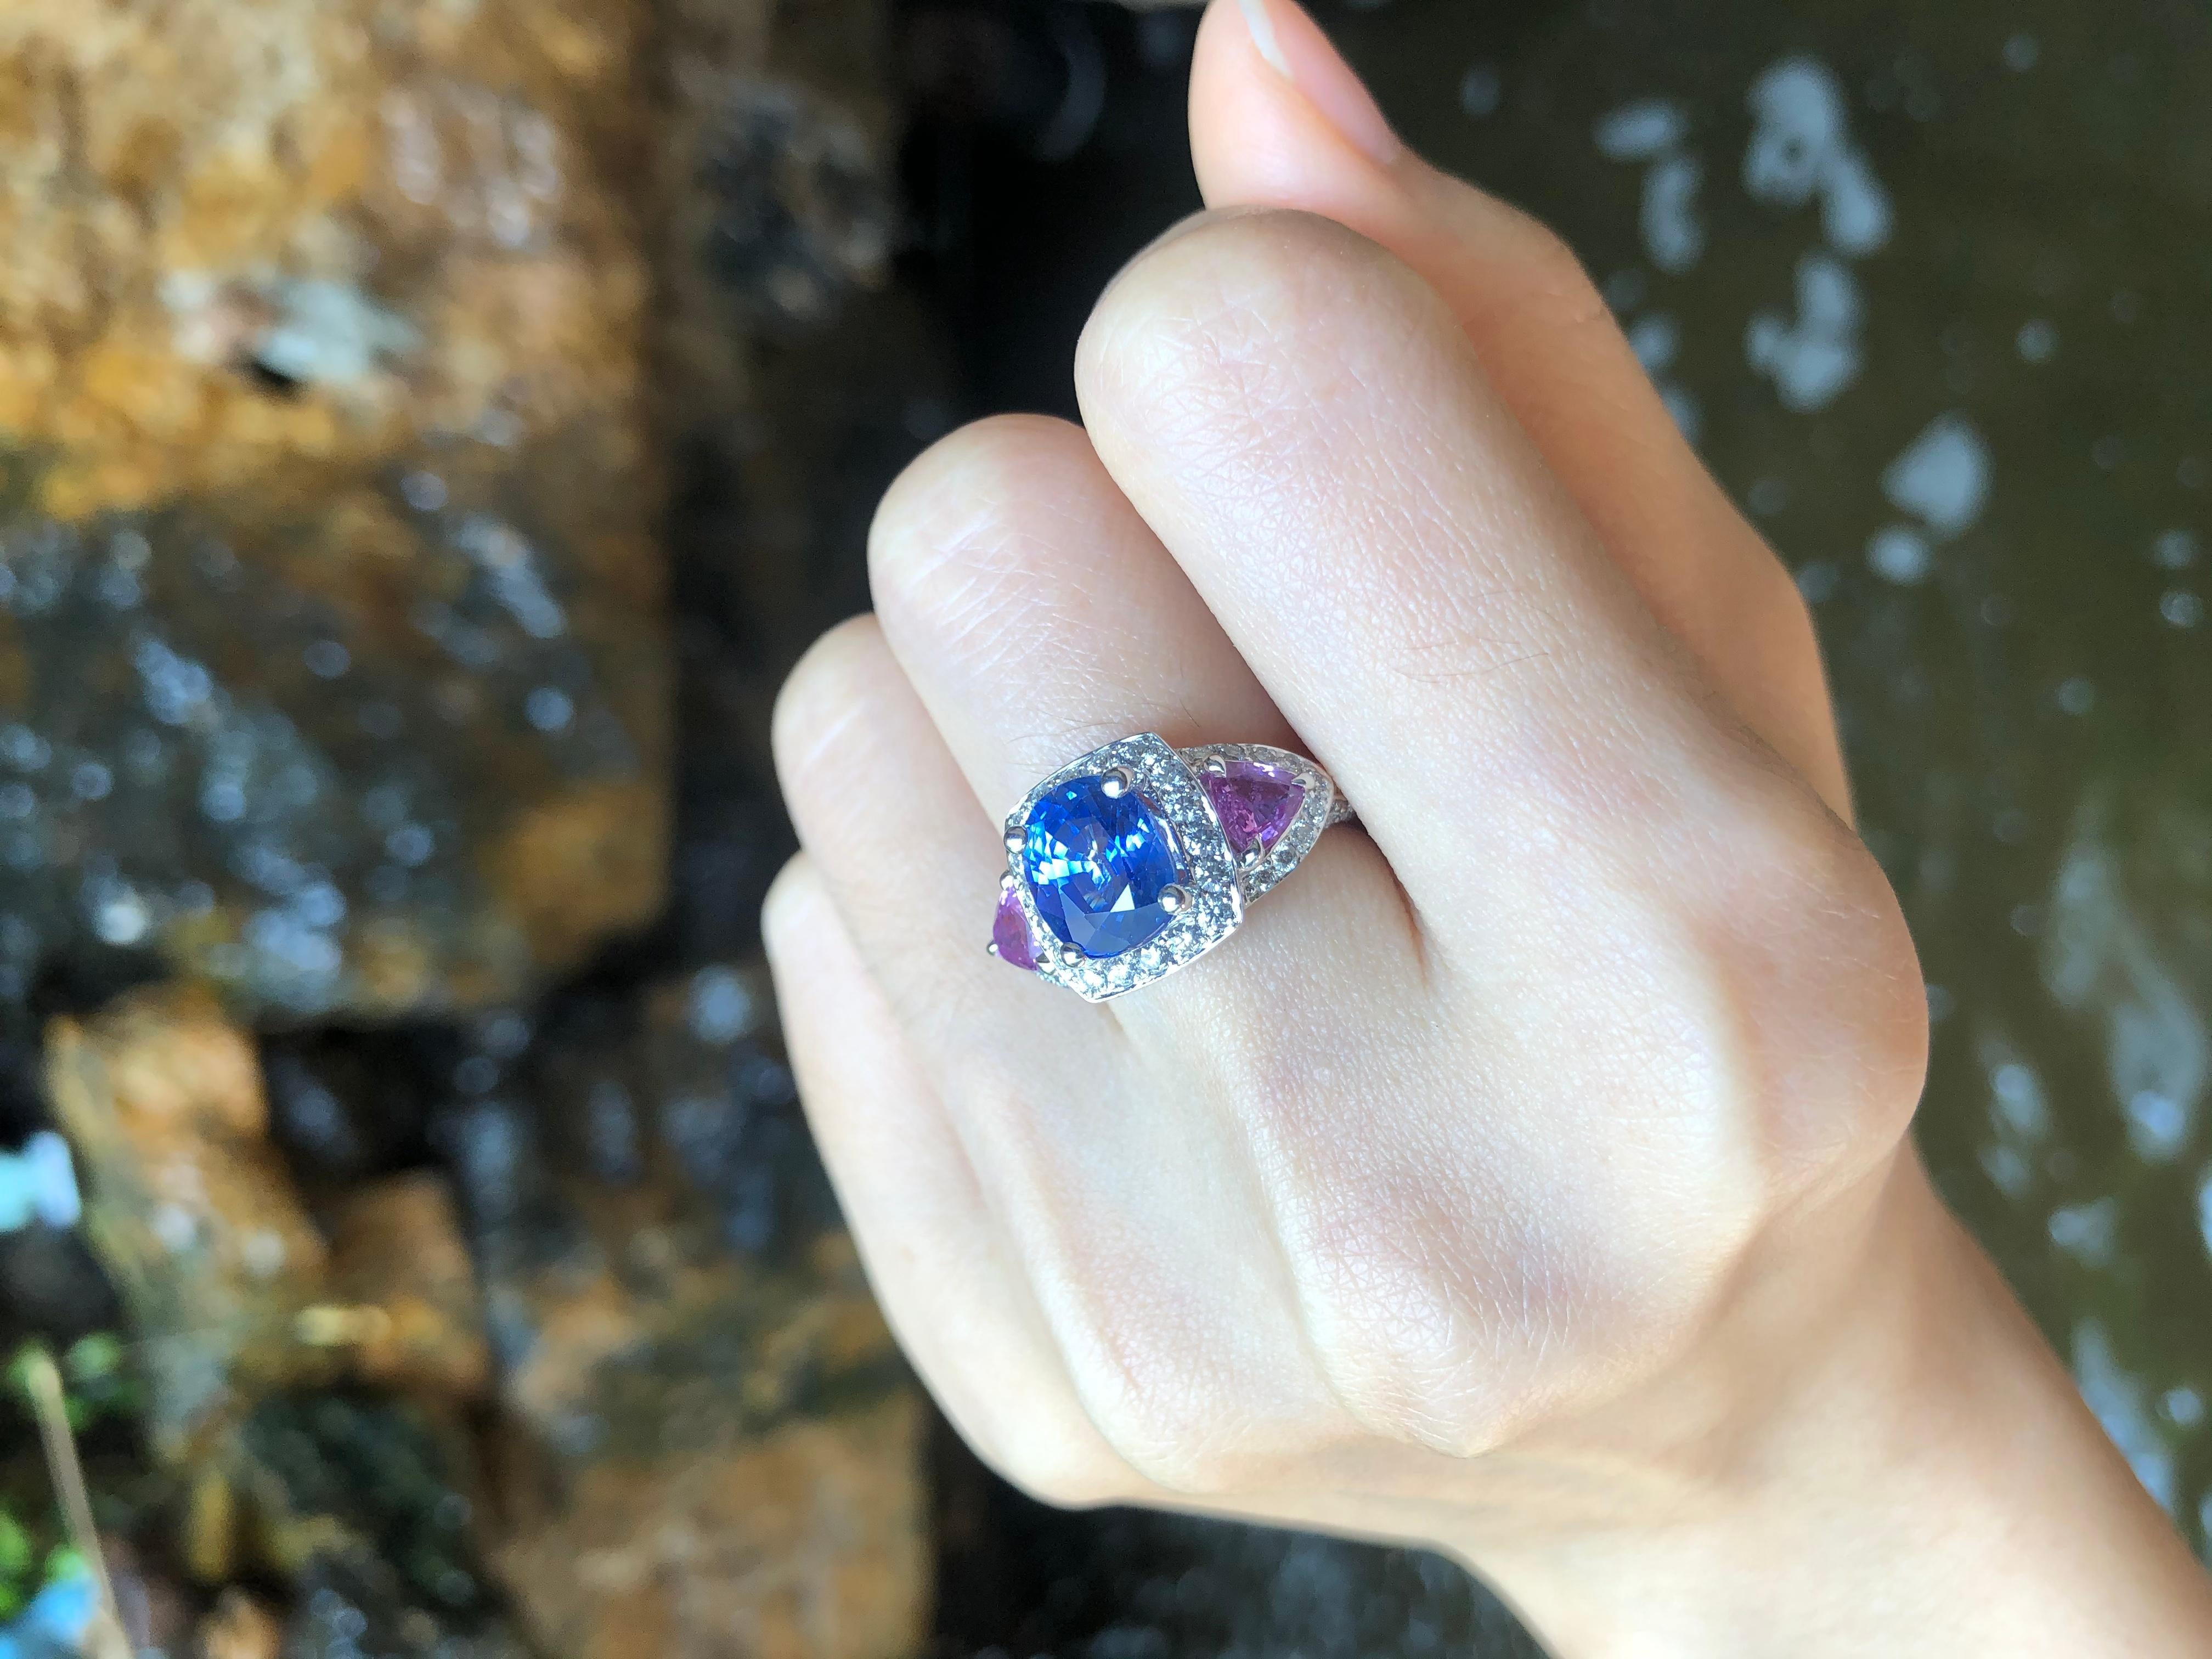 Blauer Saphir 3,59 Karat mit rosa Saphir 0,97 Karat und Diamant 0,98 Karat Ring in 18 Karat Weißgold gefasst

Breite:  2.1 cm 
Länge: 1,3 cm
Ringgröße: 51
Gesamtgewicht: 6,37 Gramm

